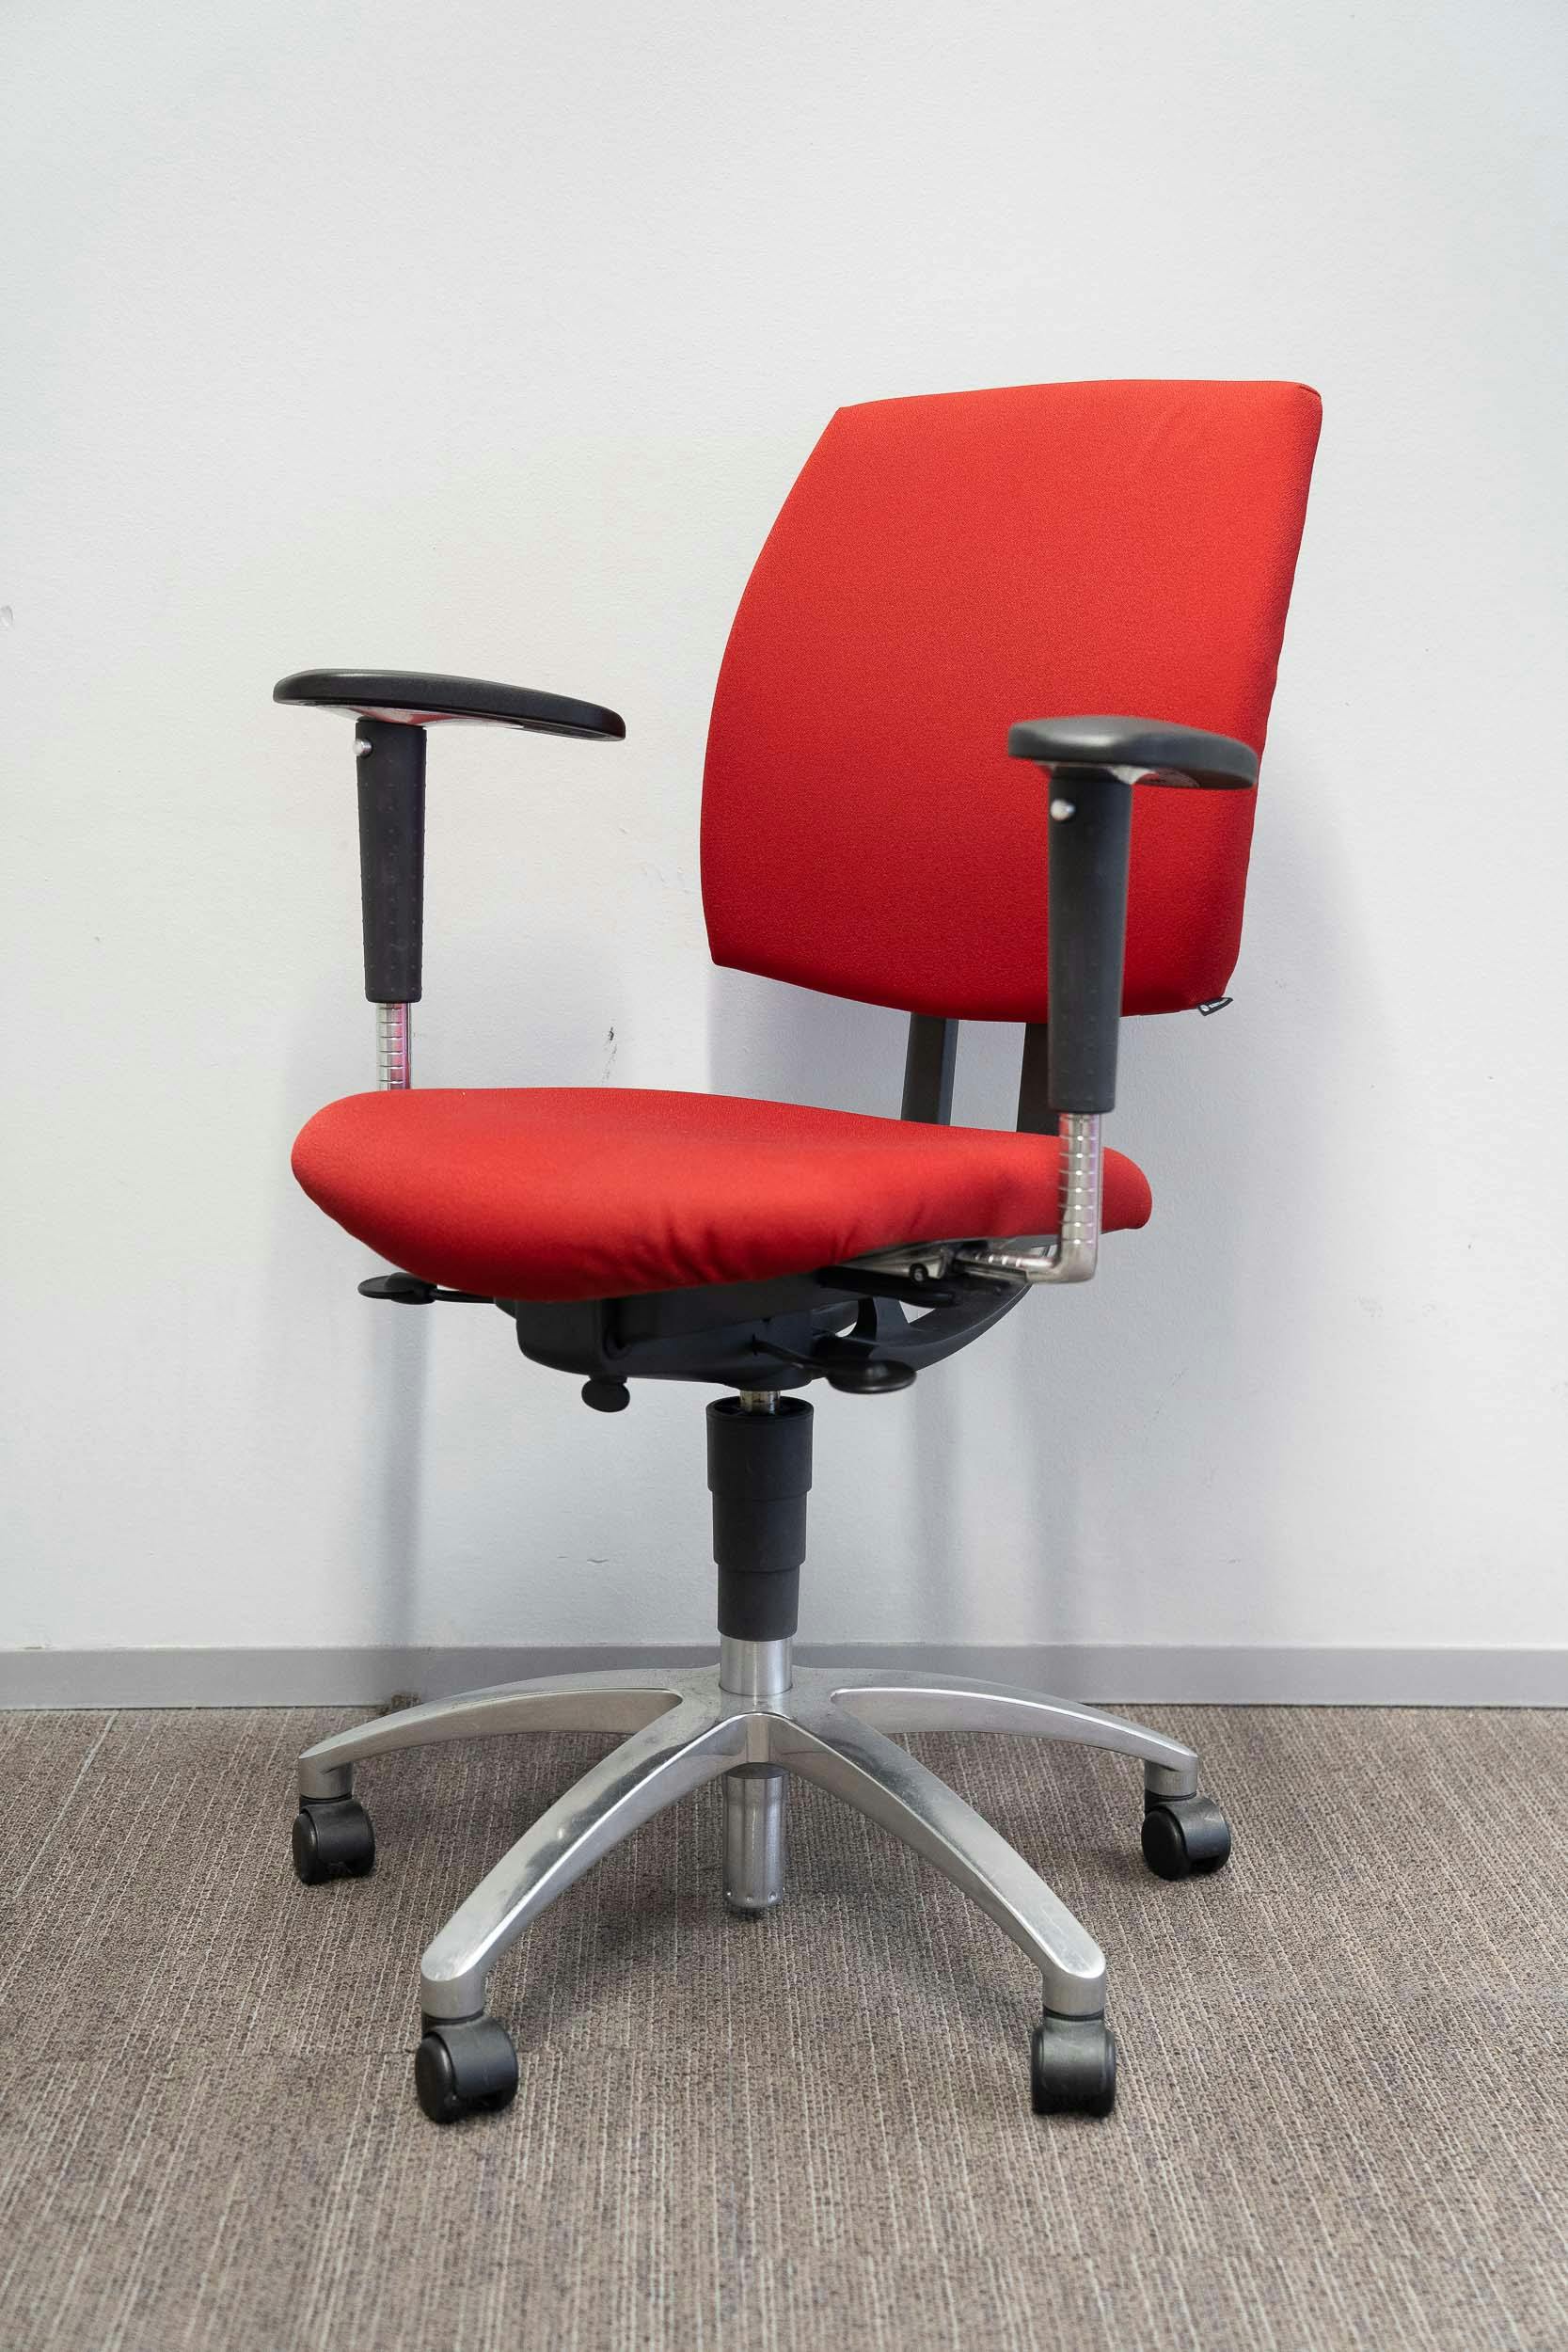 Drabert rode bureaustoel op wielen - Relieve Furniture